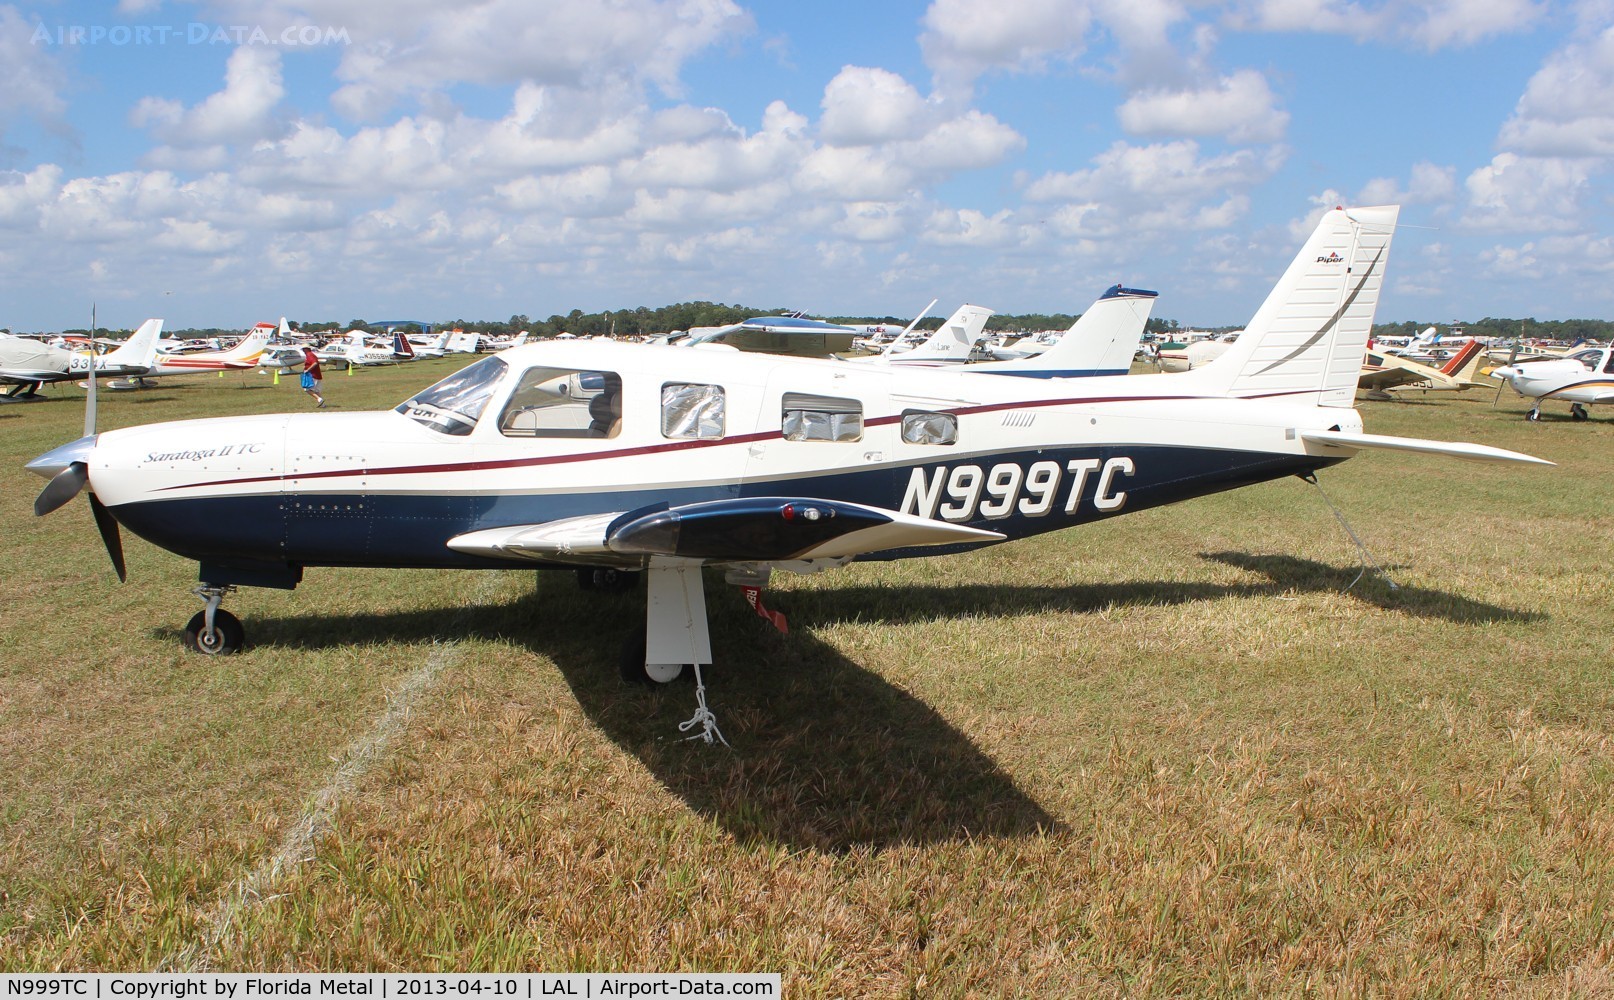 N999TC, 2004 Piper PA-32R-301T Turbo Saratoga C/N 3257356, PA-32R-301T